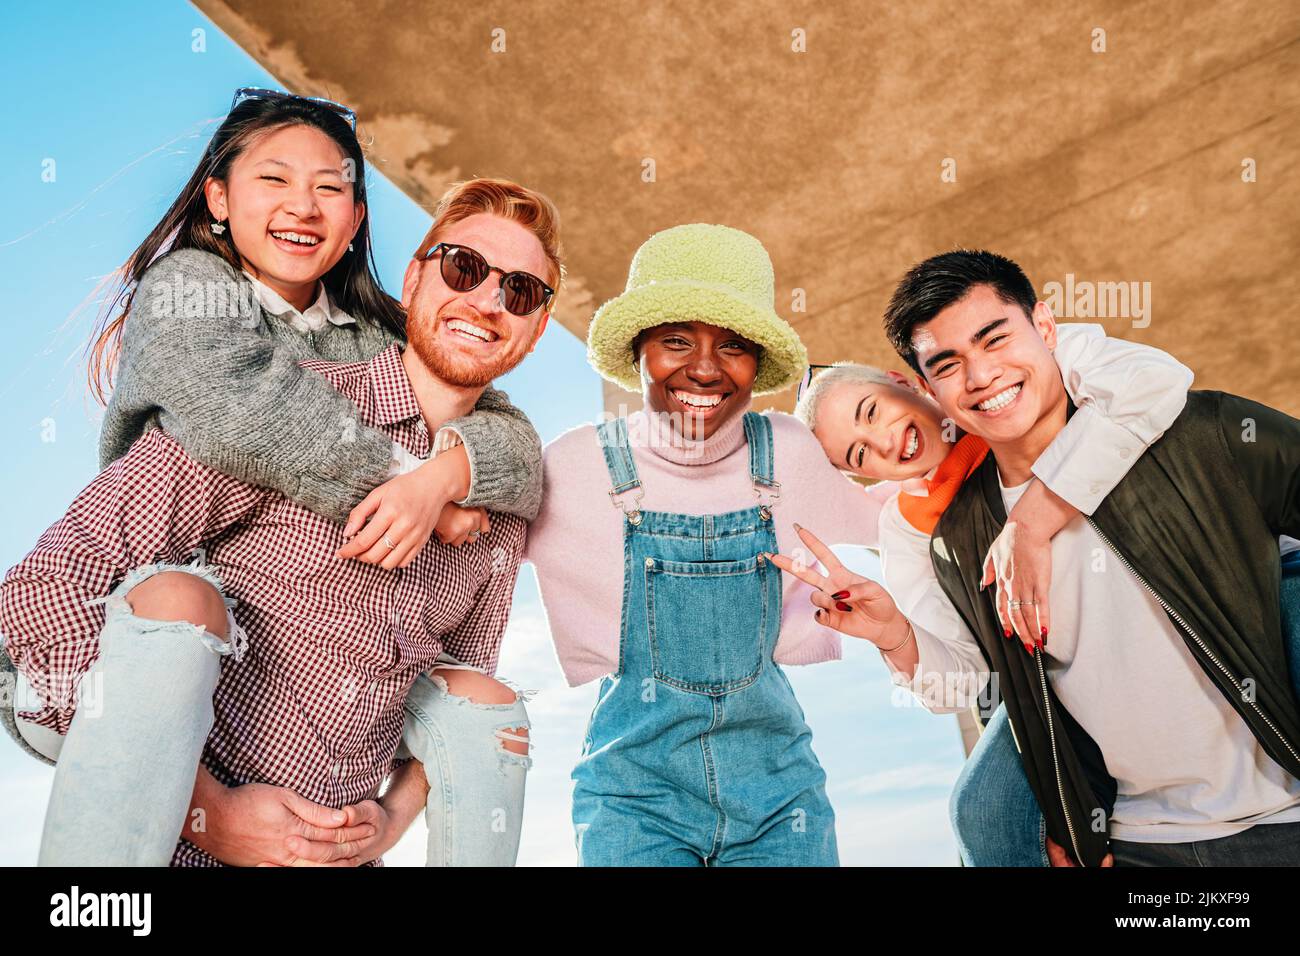 Gruppe von fünf multiethnischen Freunden, die lächeln und Spaß beim Betrachte der Kamera haben. Stockfoto